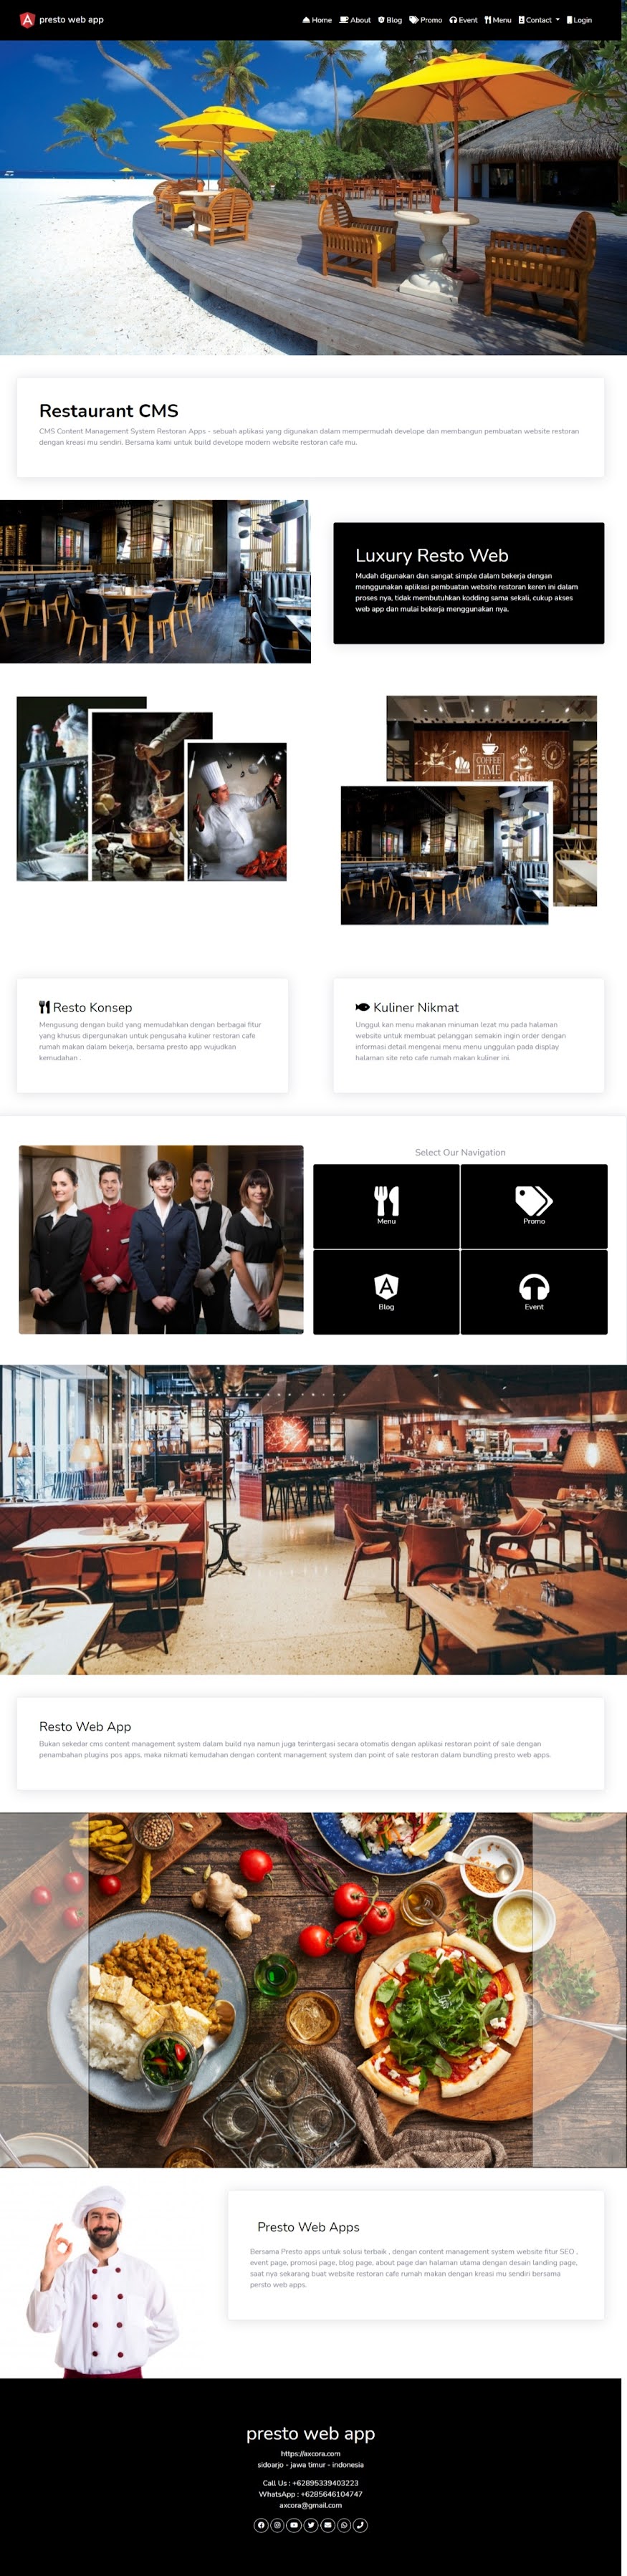 restoran online website aplikasi restoran cafe rumah makan